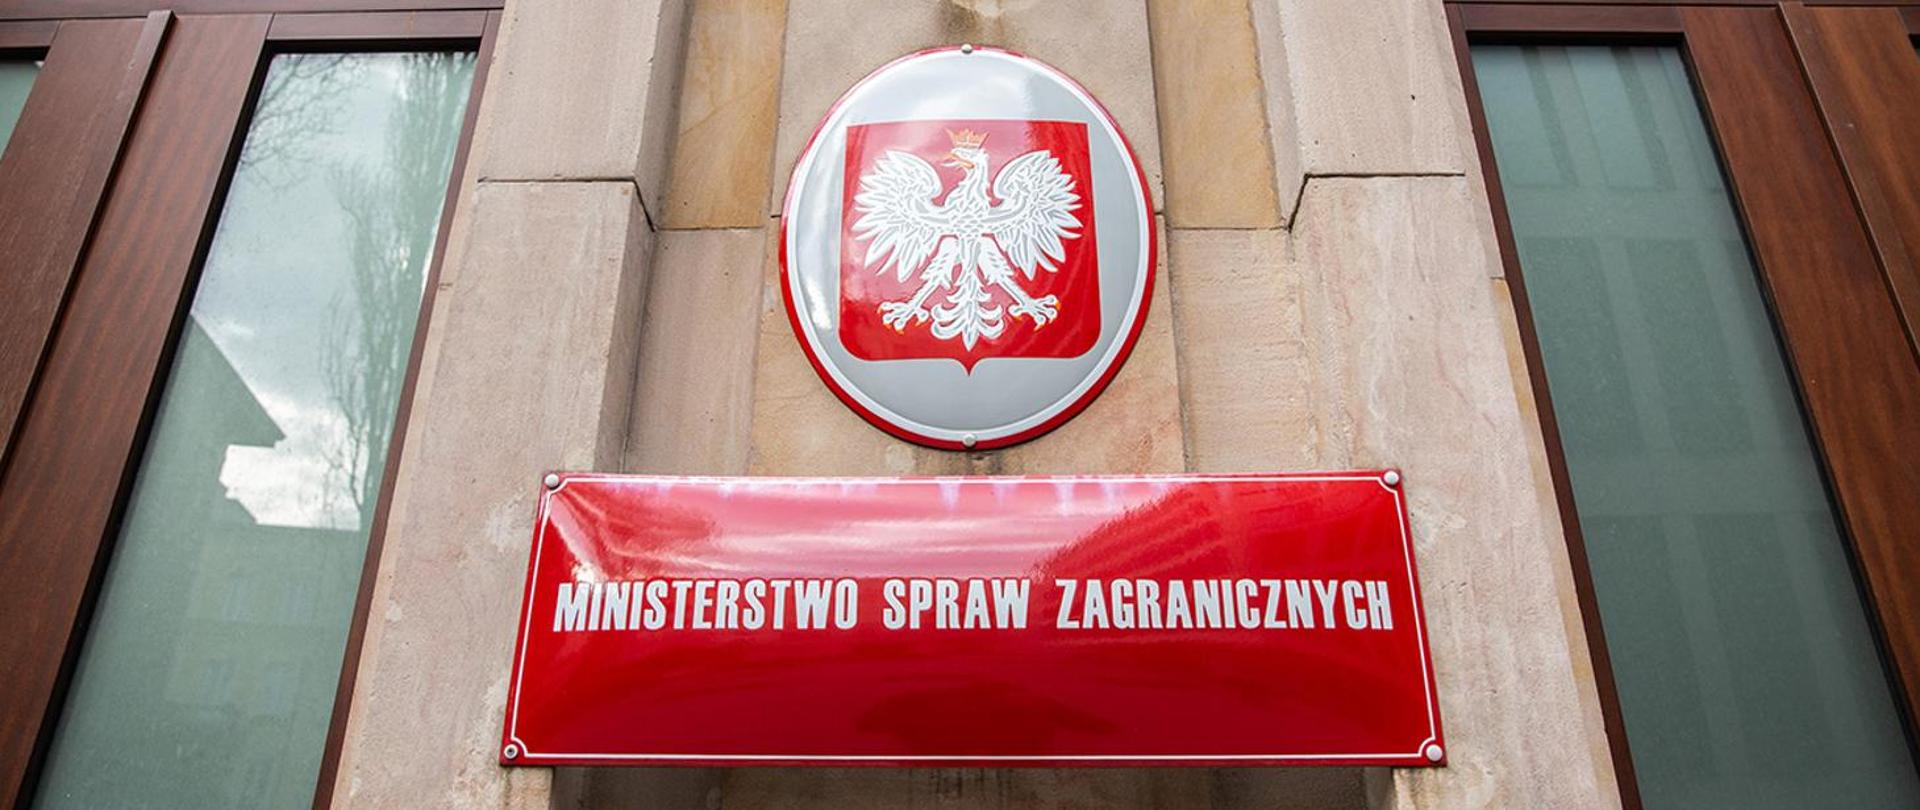 Ministerstwo Spraw Zagranicznych Warszawa